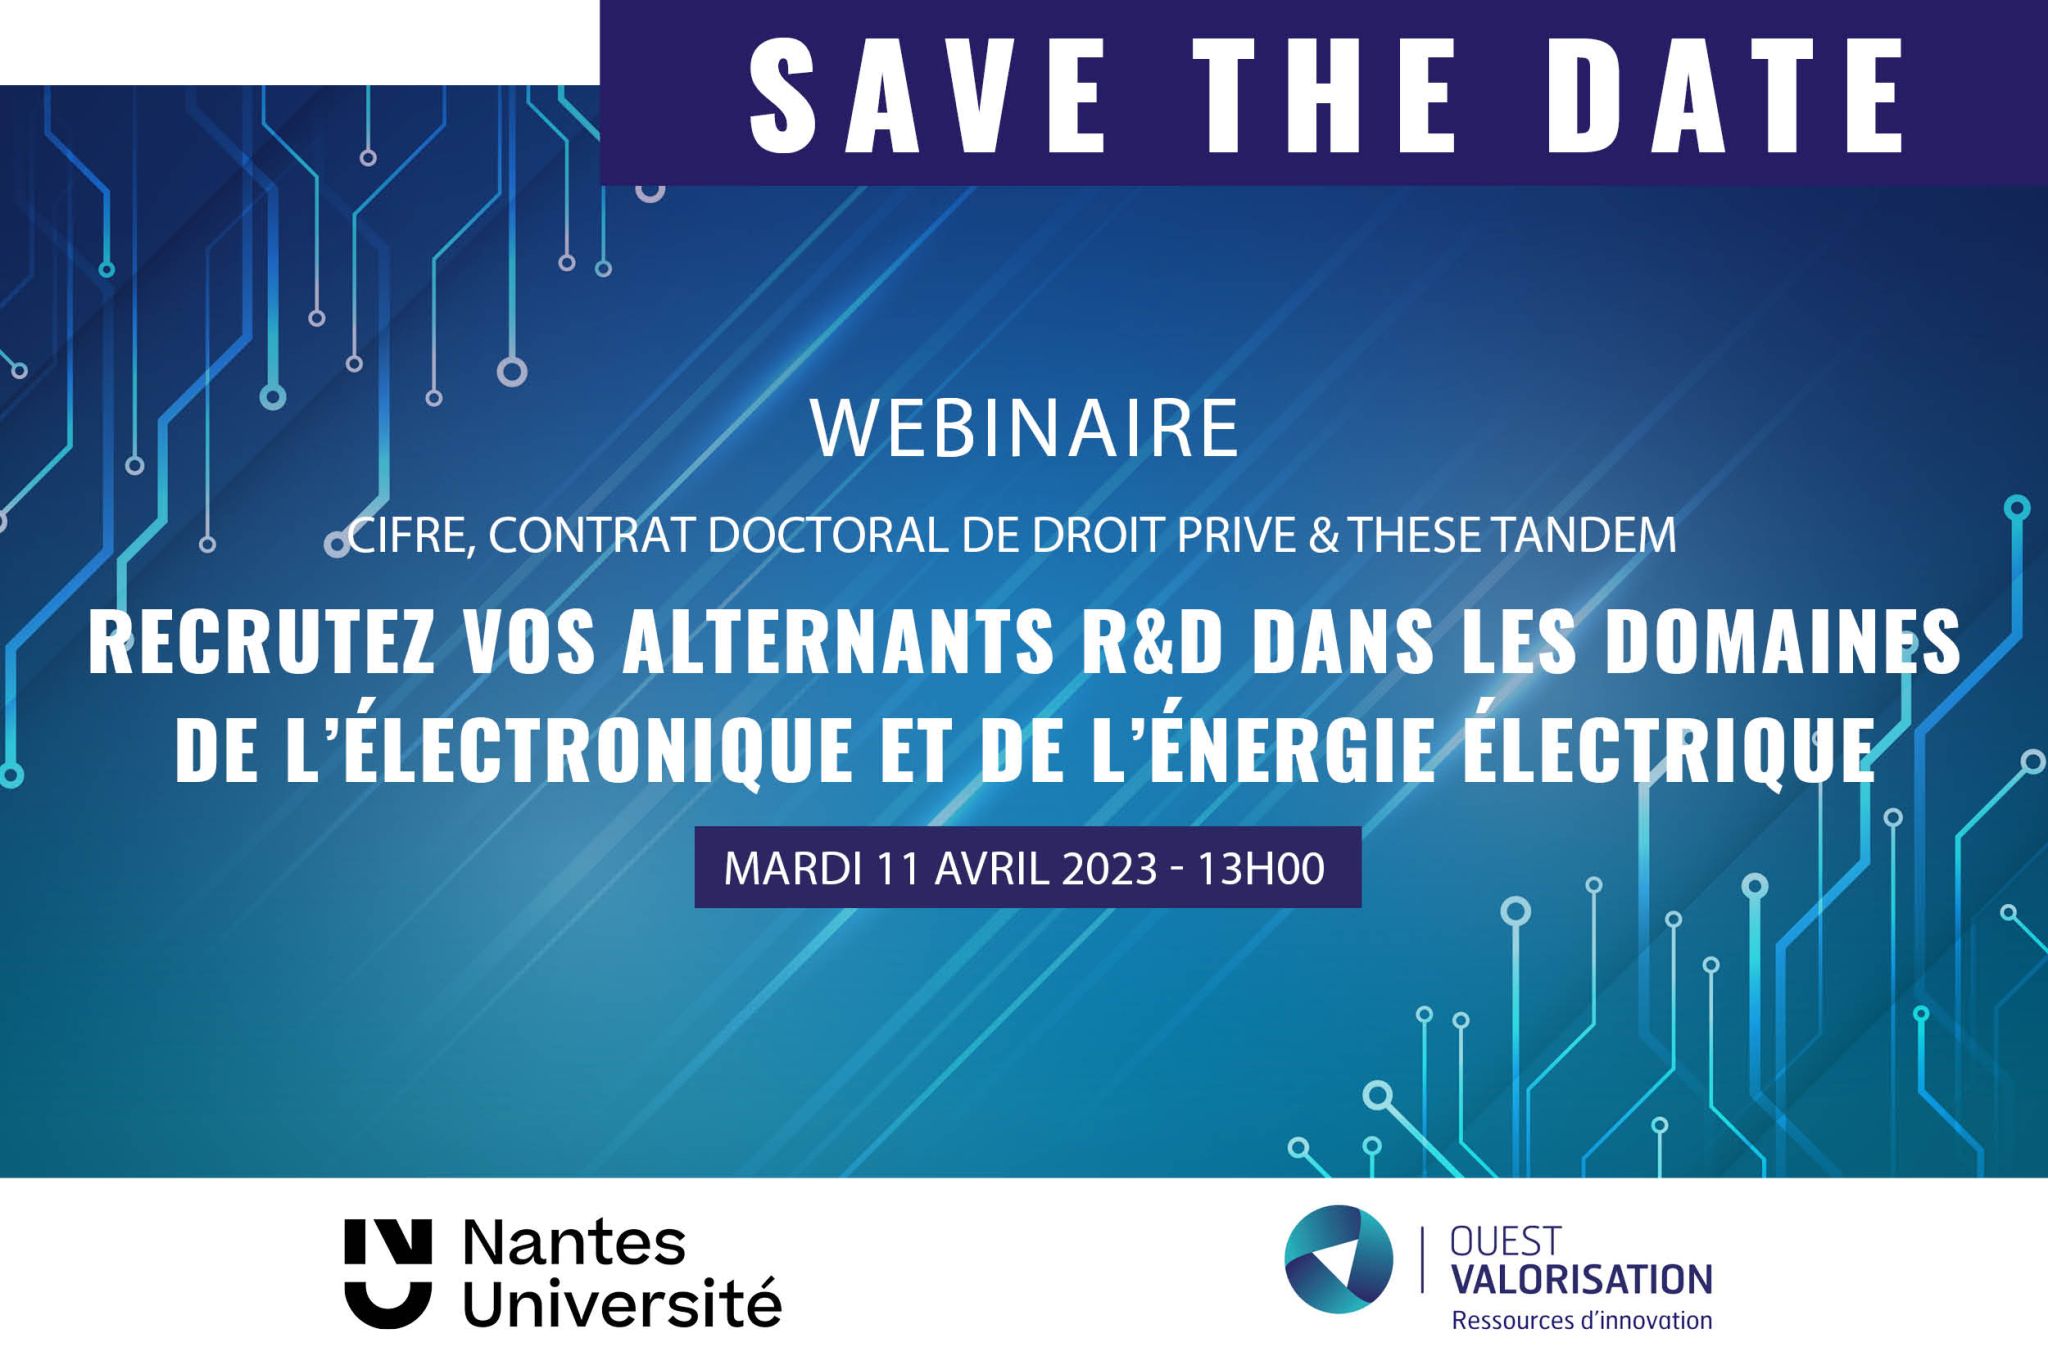 webinaire 11 avril 2023 doctorant alternant electronique et energie electrique - SATT Ouest Valorisation - Nantes Universite